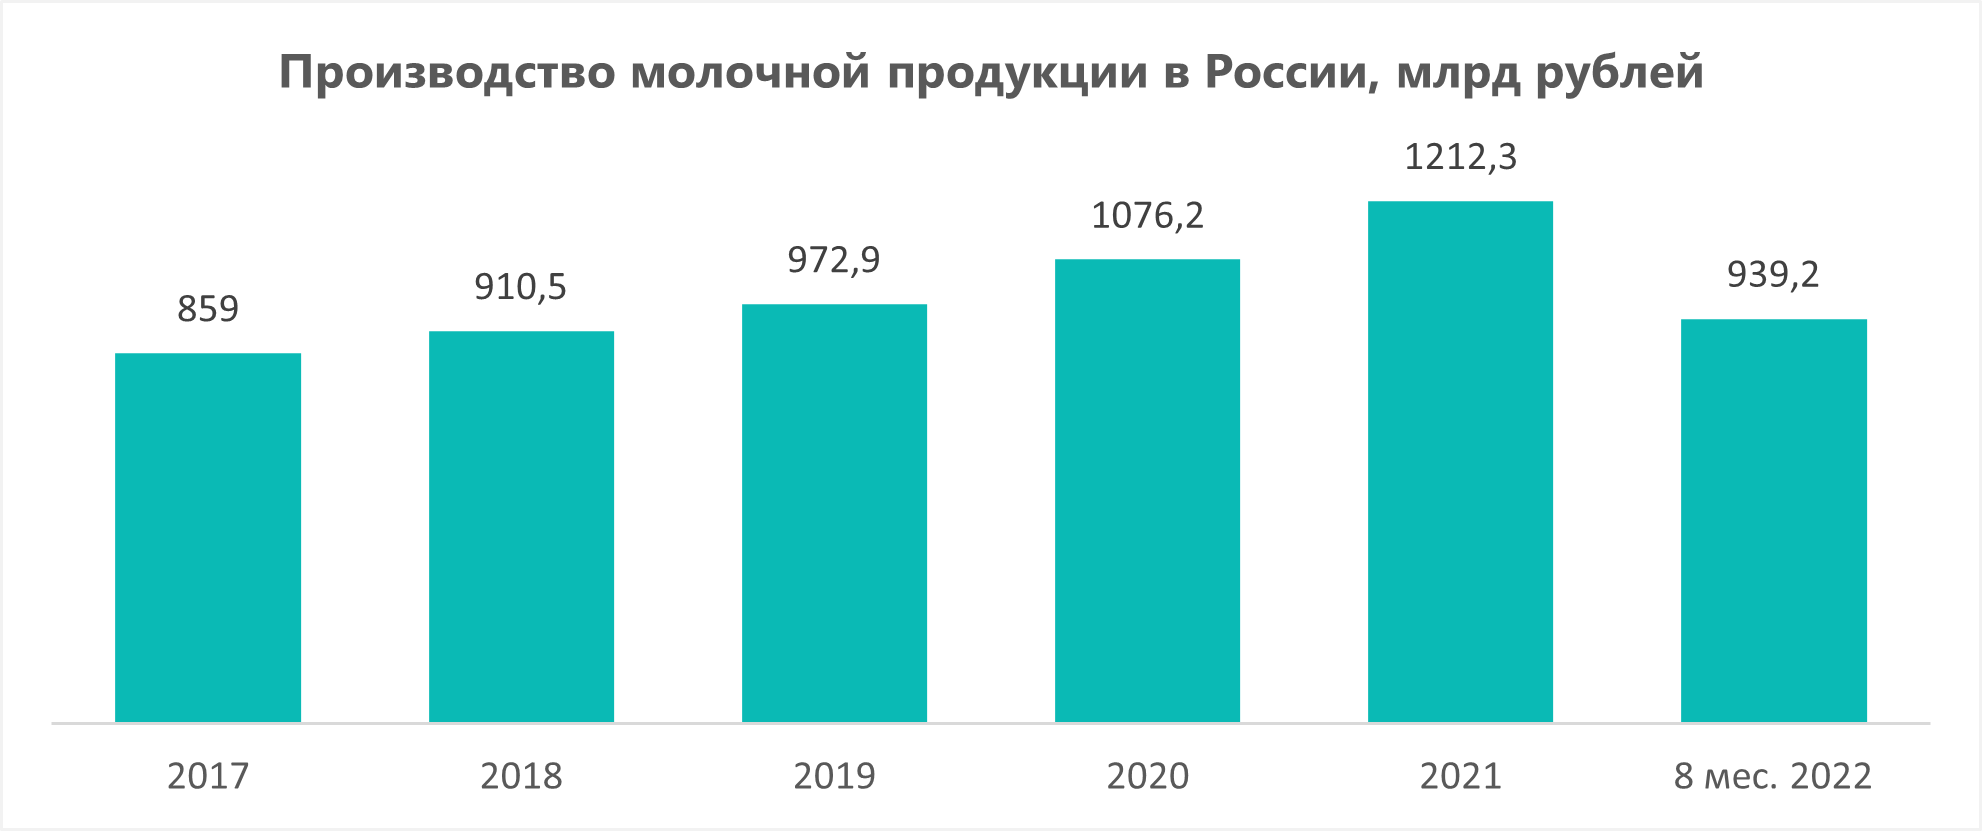 Производство молочной продукции в России, млрд рублей